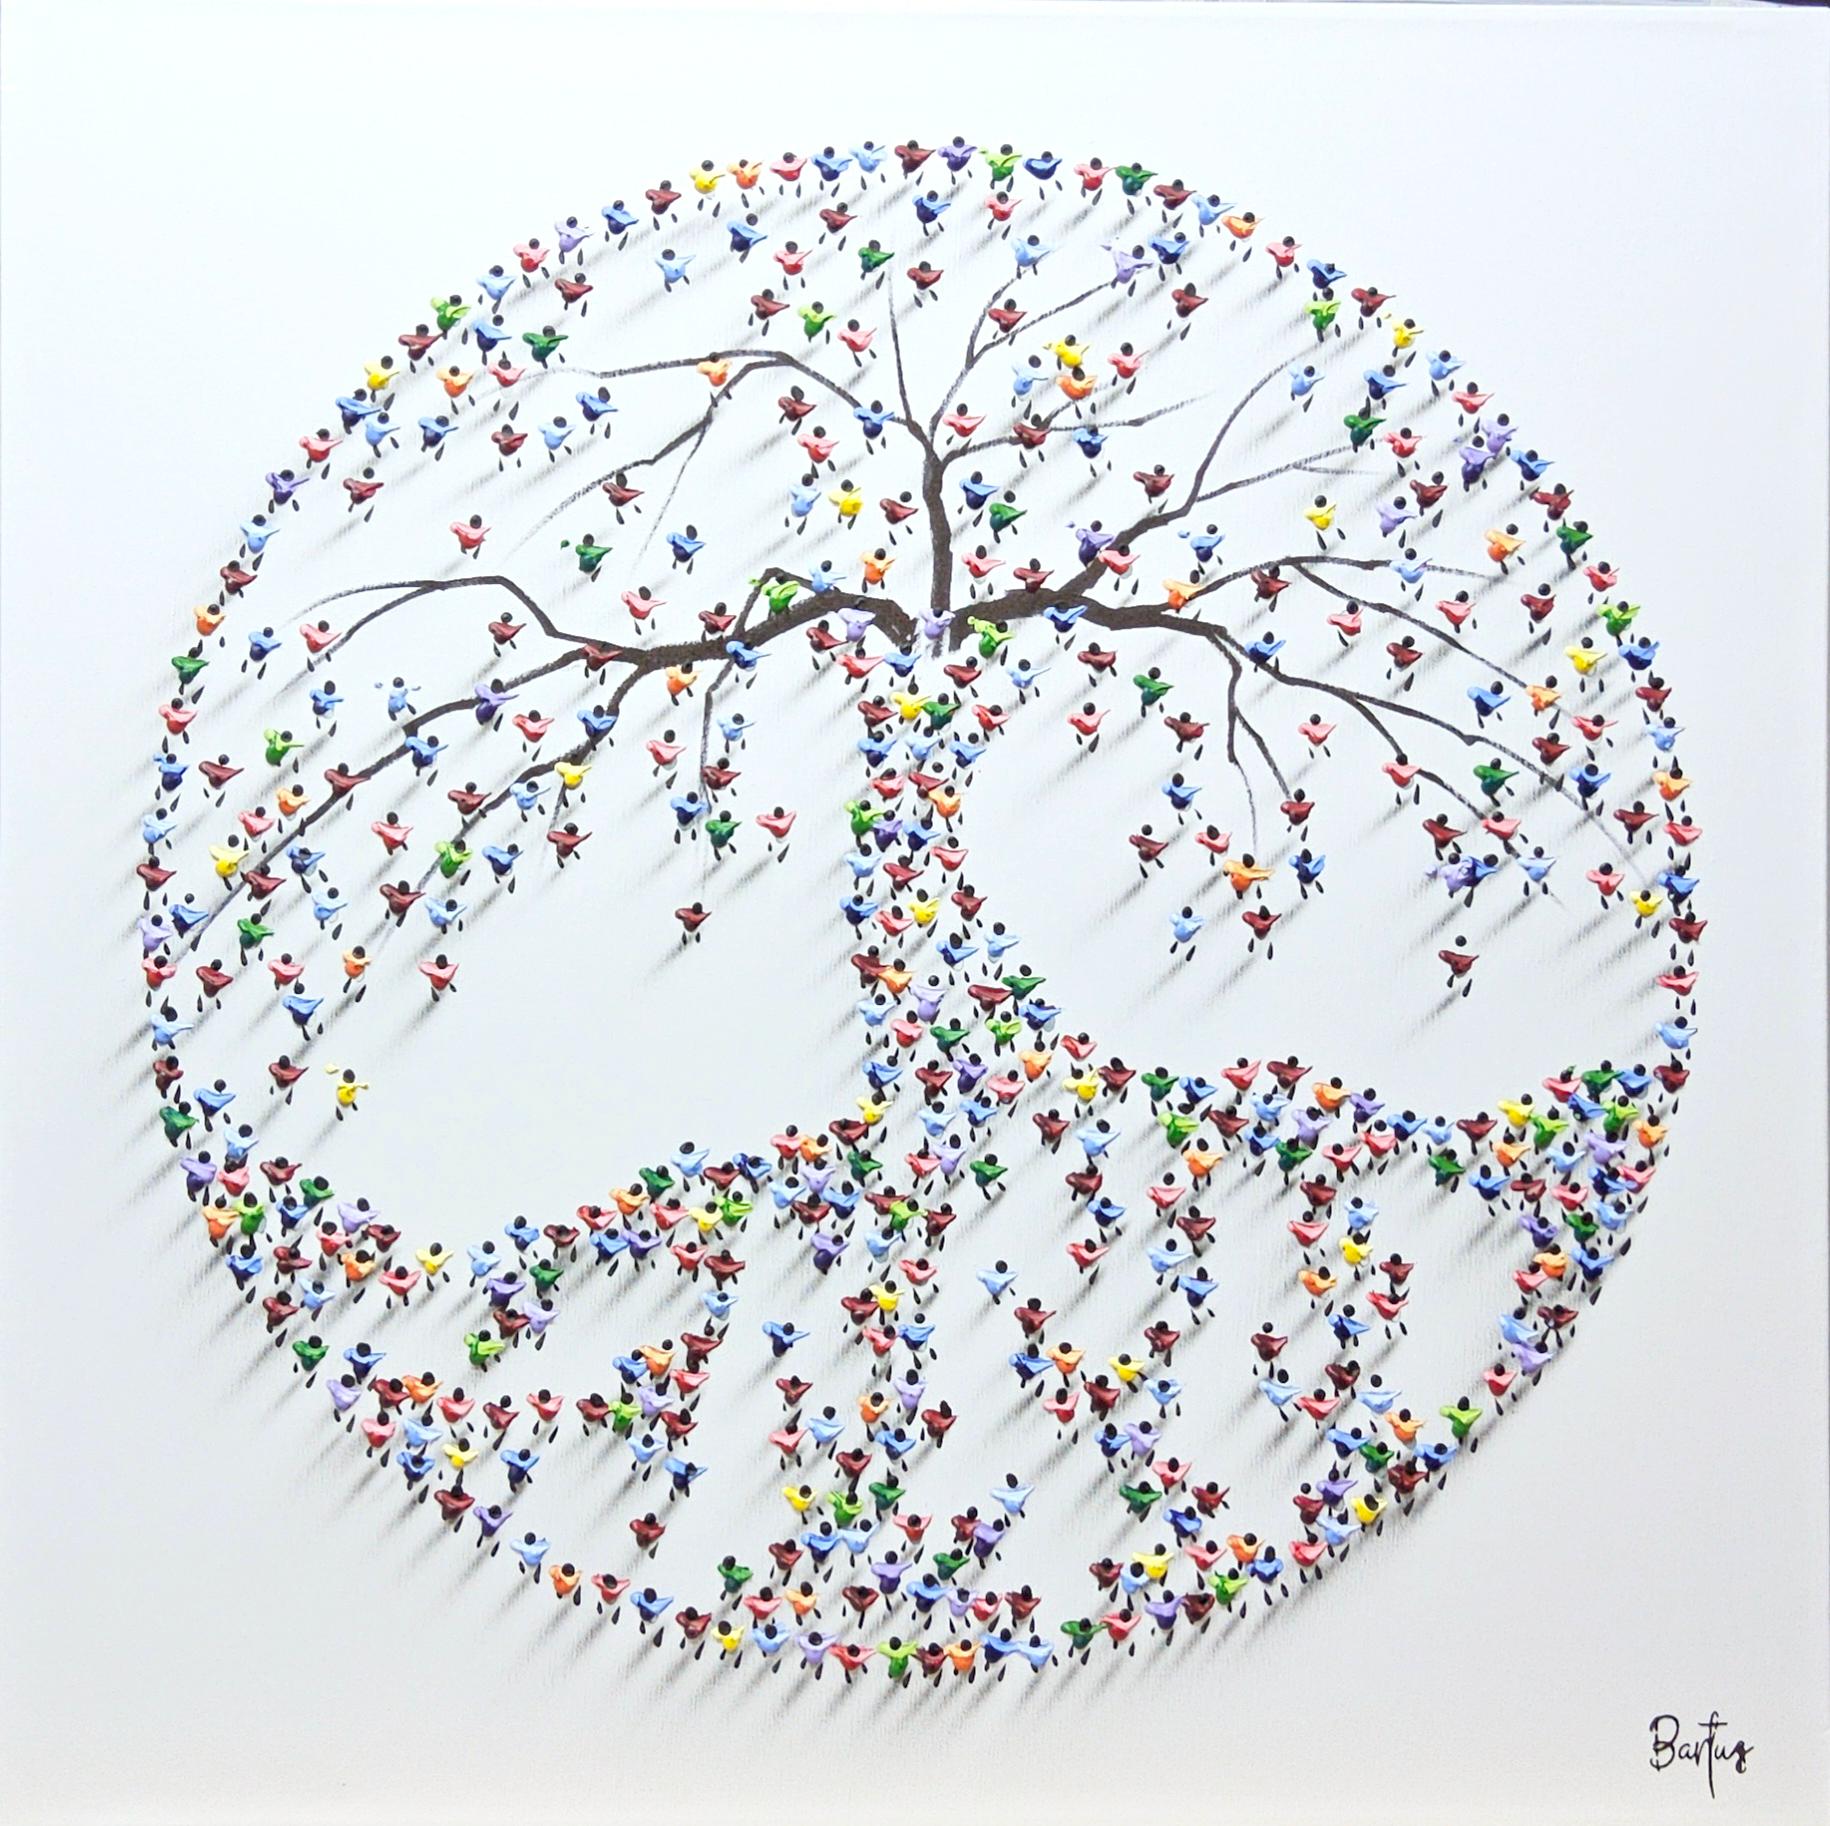 Cette œuvre, "We Grower Stronger Together", est une peinture mixte sur toile de 32x32 réalisée par l'artiste Francisco Artistics. Il s'agit d'un symbole d'arbre de vie, composé de touches de peinture individuelles, stratégiquement placées et formées